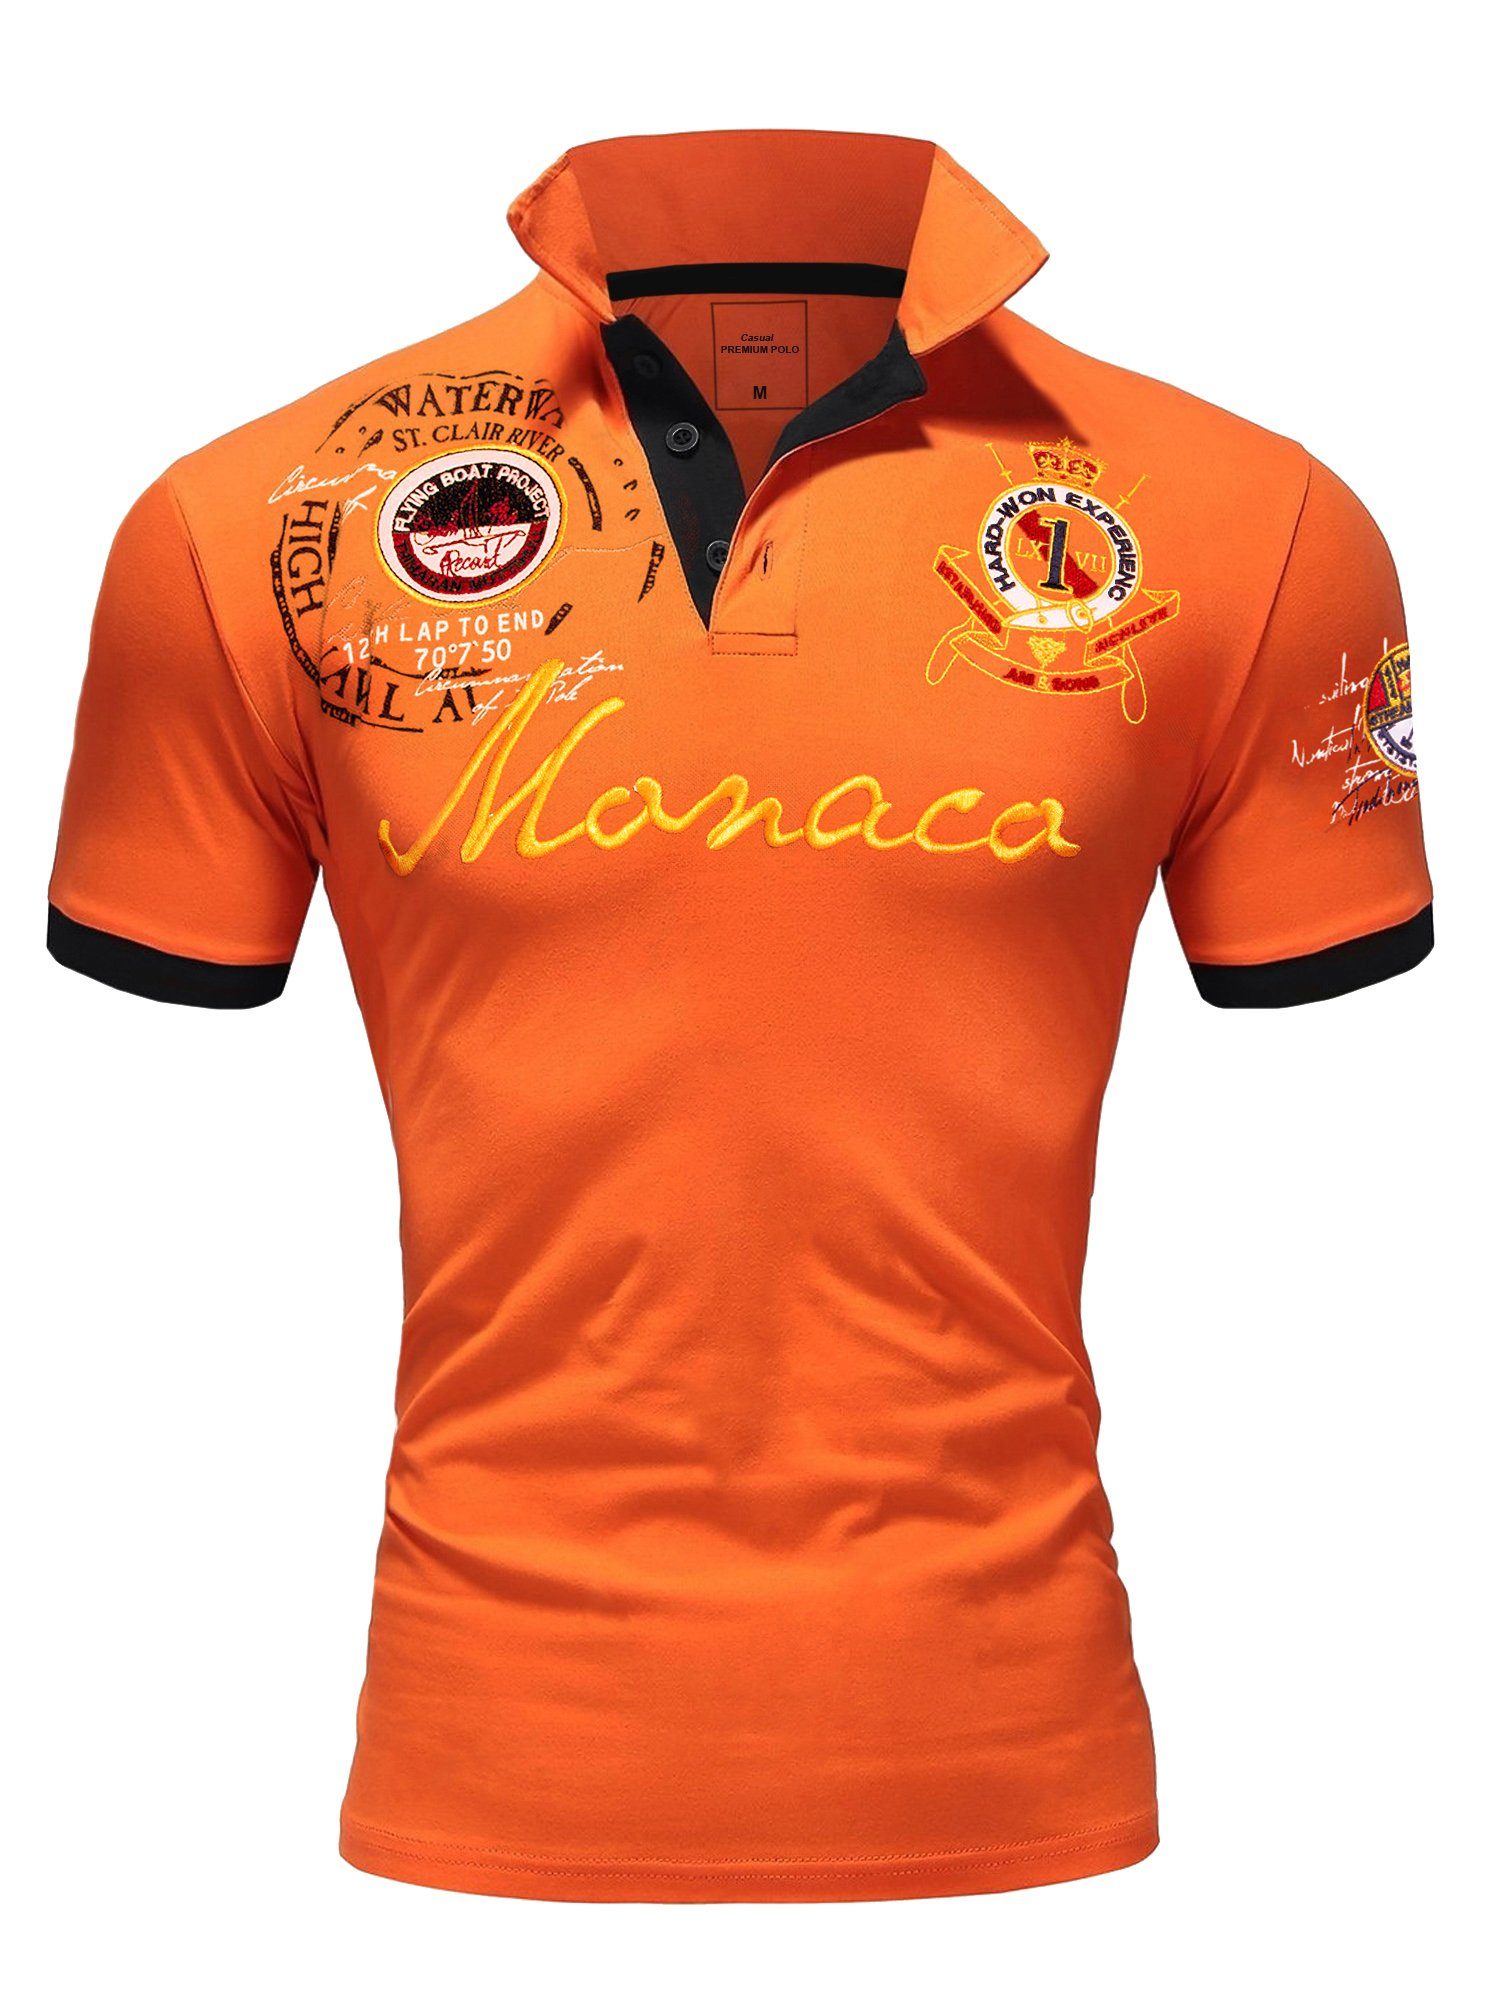 Polohemd Stickerei Poloshirt Kontrast Herren Monaco Monaco mit T-Shirt Basic Orange Amaci&Sons 2.0 Kurzarm Poloshirt Stickerei